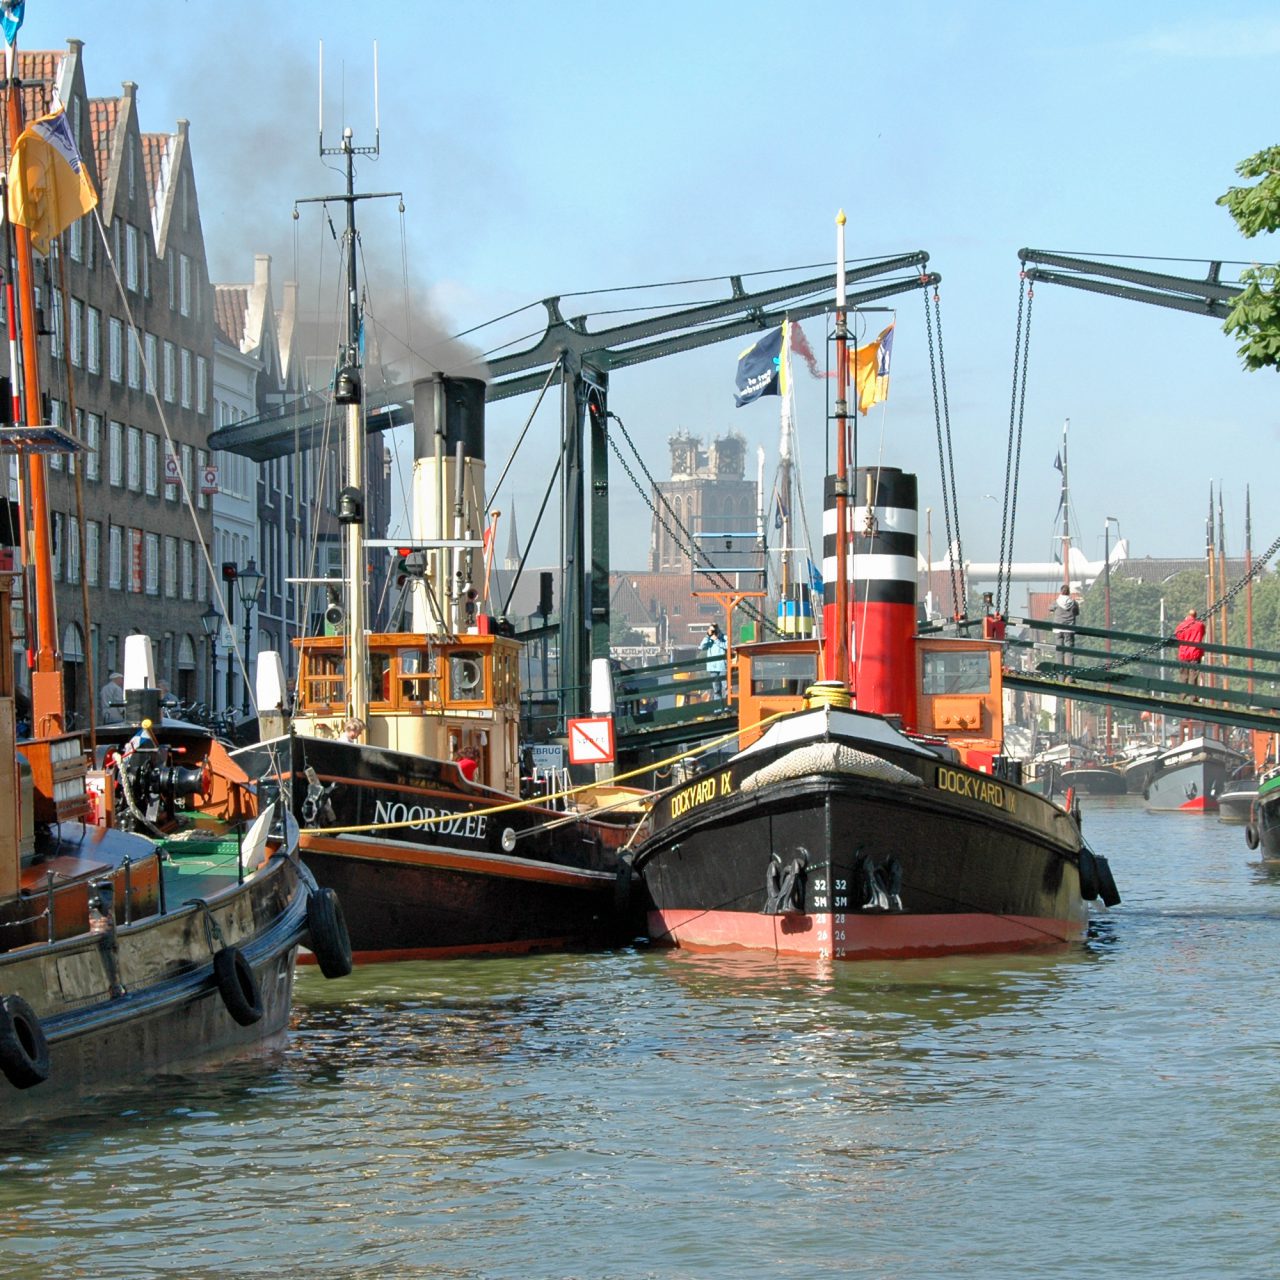 Dordt in Stoom - Dordrecht - evenementen Damiatebrug - Kuipershaven - Wolwevershaven - boot - stoomboot